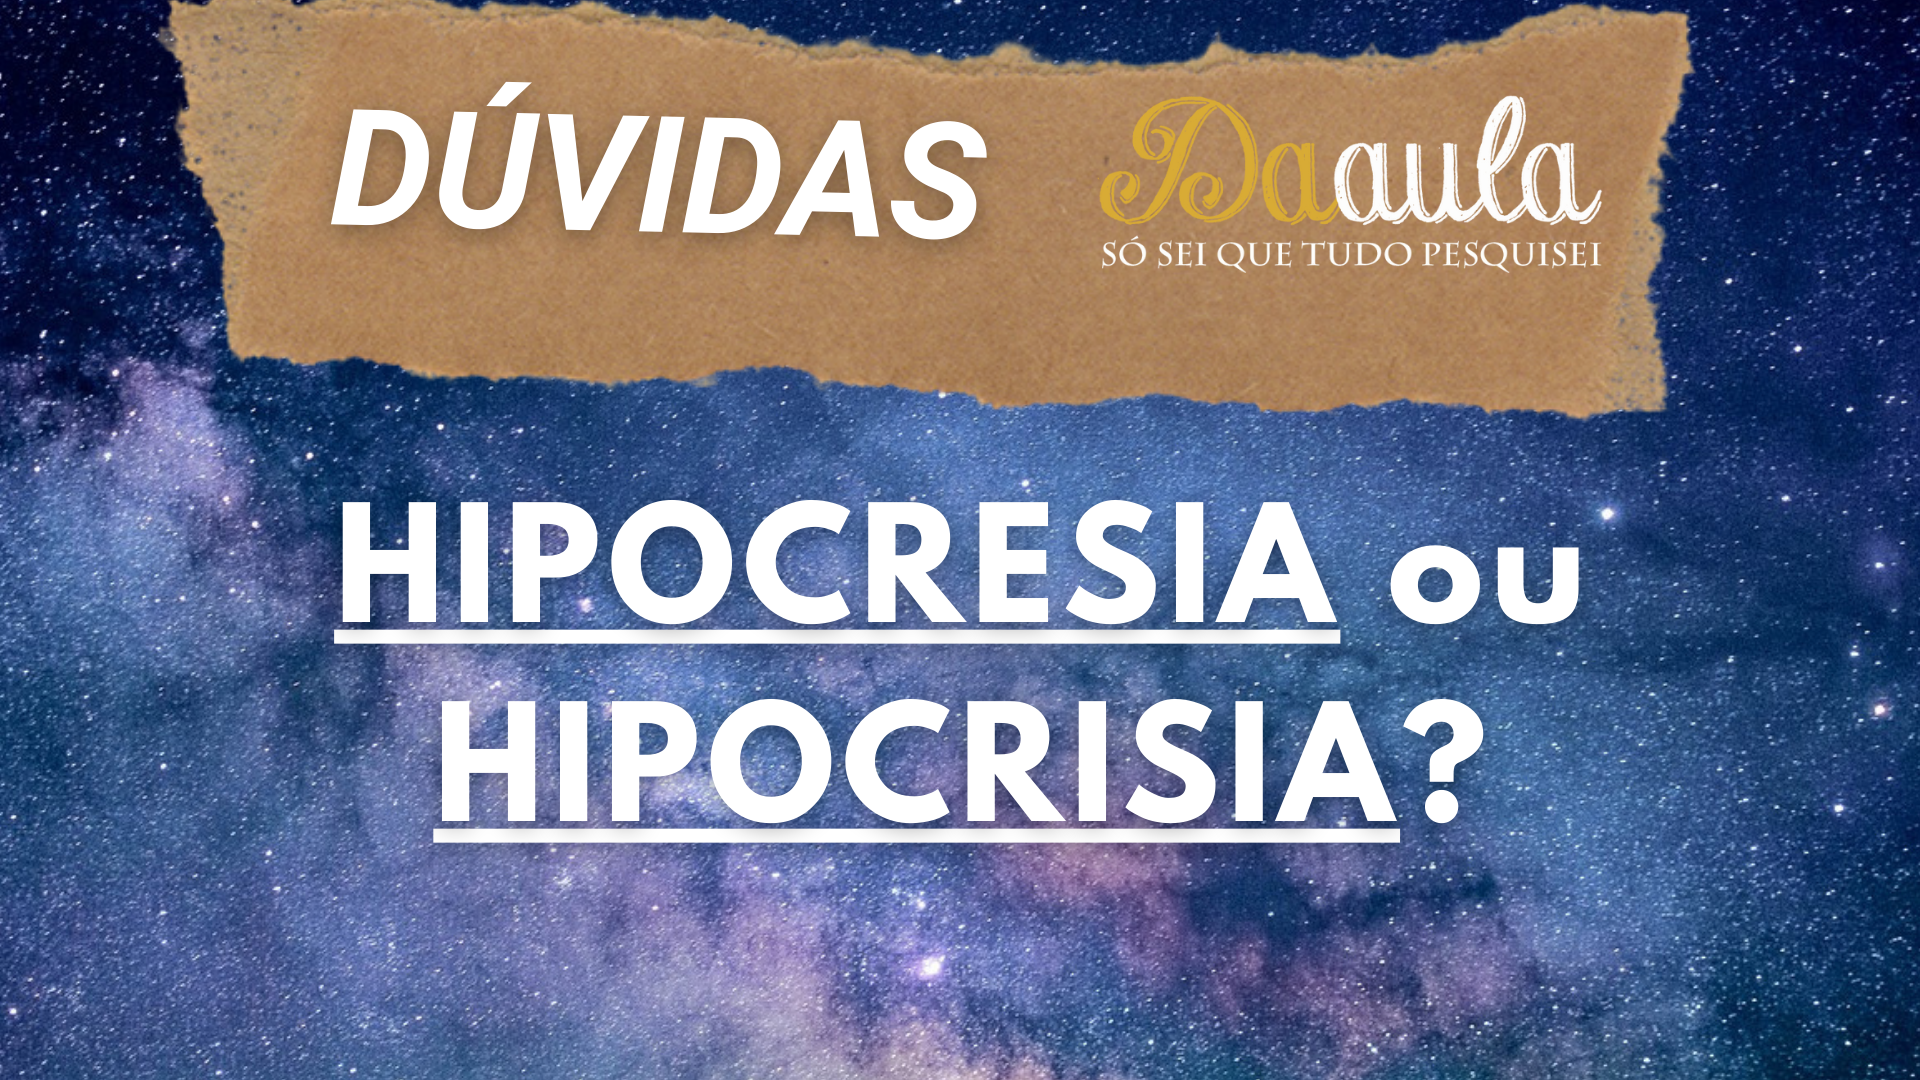 Hipocrisia ou Hipocresia: Qual a Forma Correta?